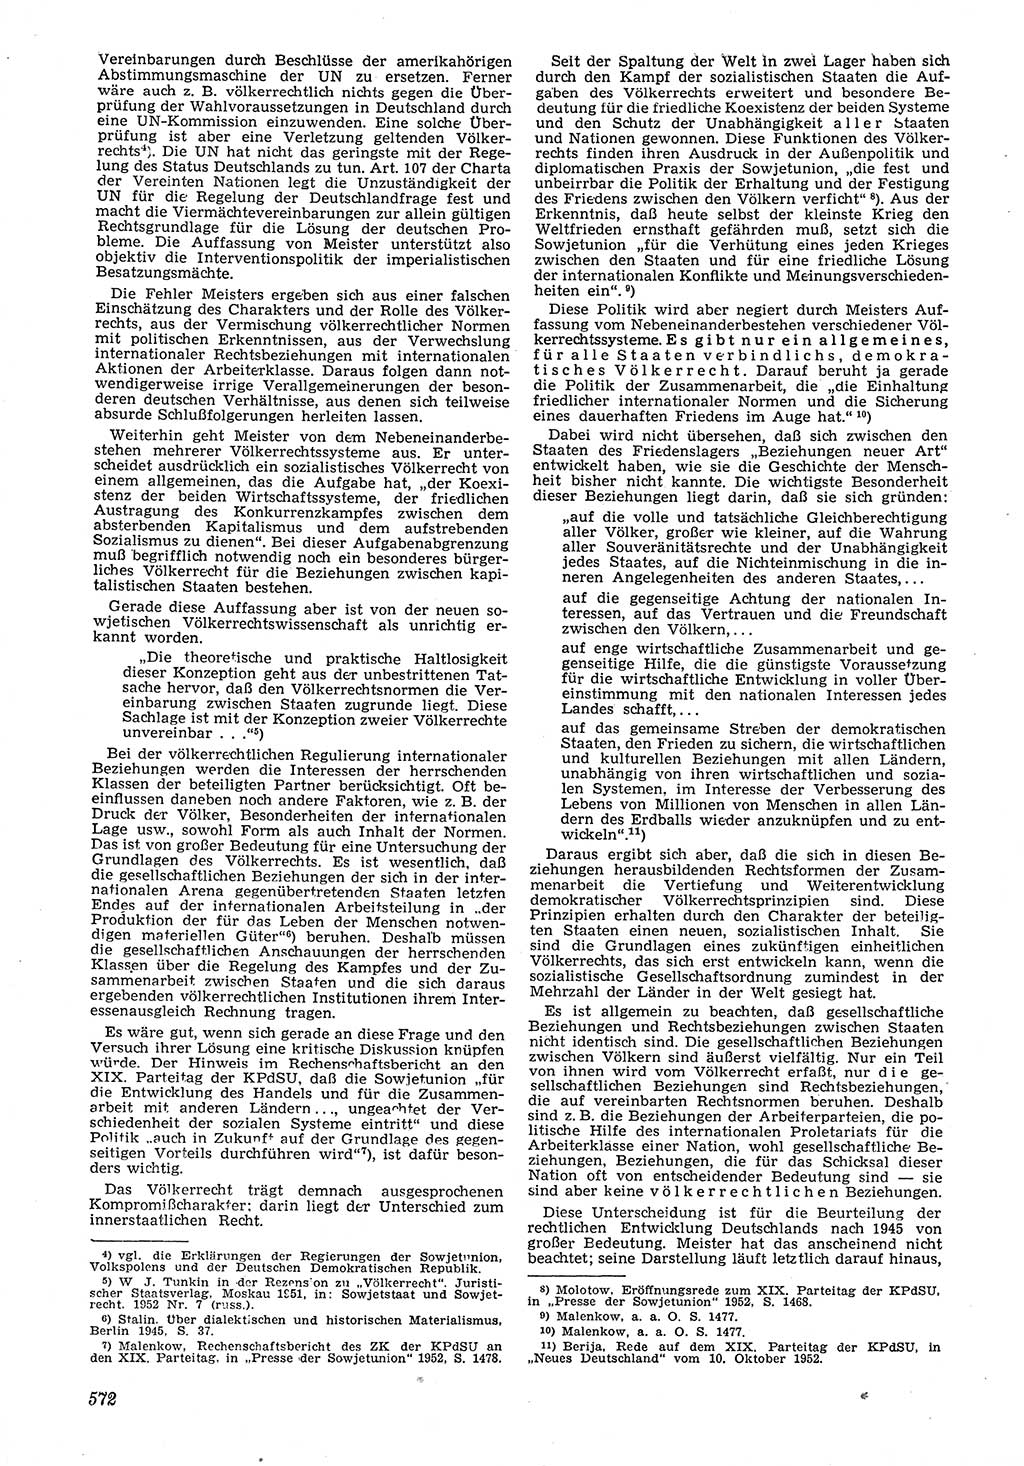 Neue Justiz (NJ), Zeitschrift für Recht und Rechtswissenschaft [Deutsche Demokratische Republik (DDR)], 6. Jahrgang 1952, Seite 572 (NJ DDR 1952, S. 572)